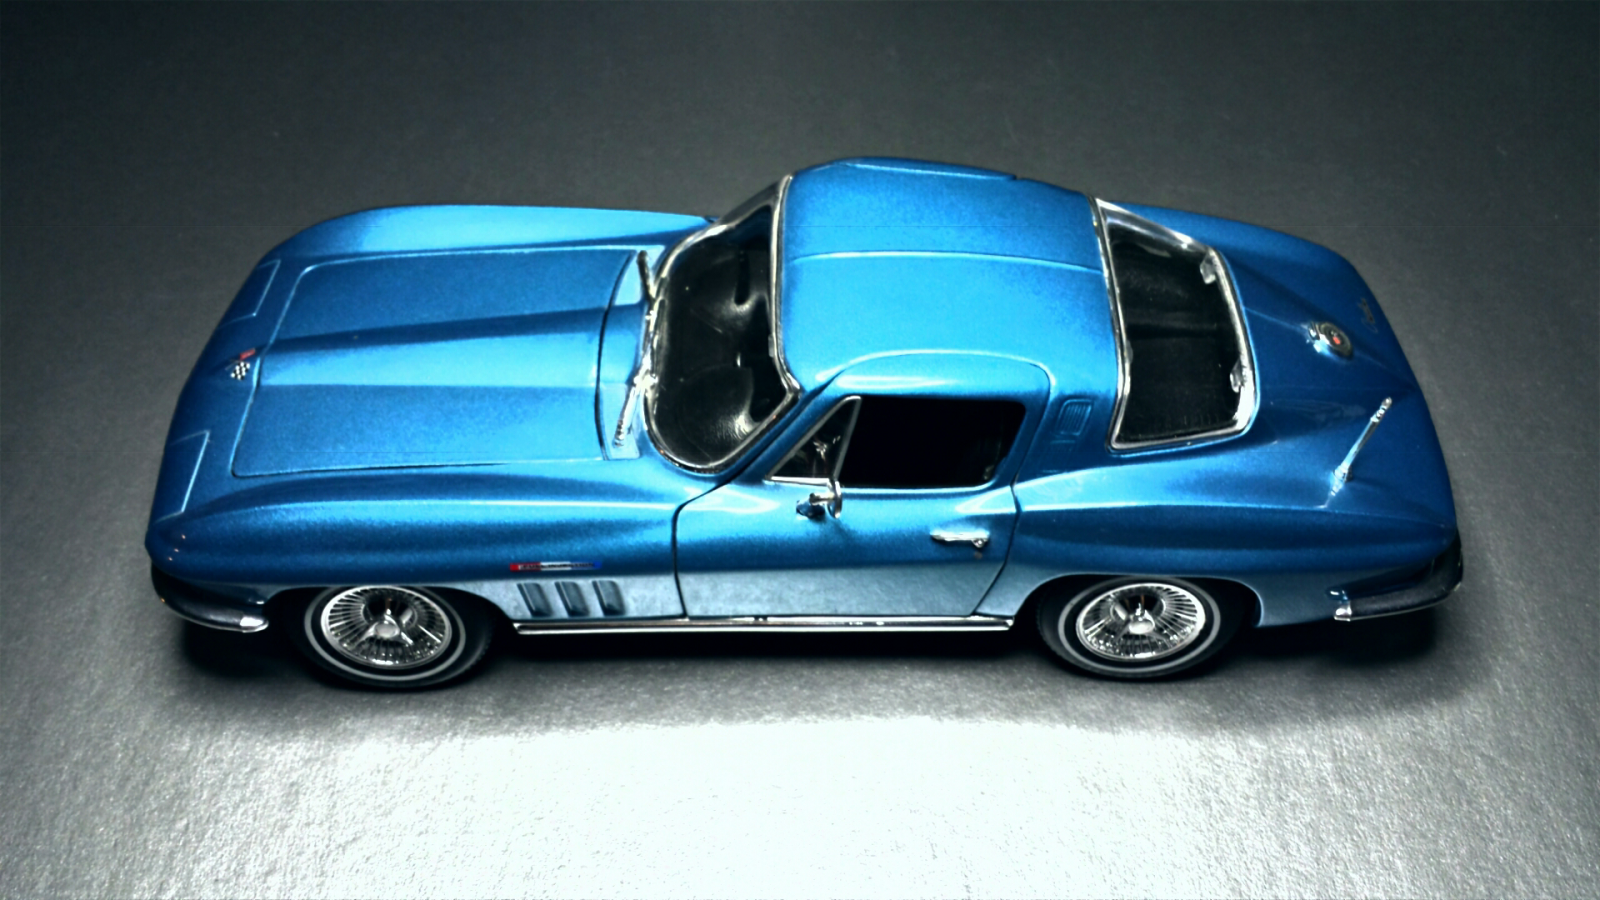 Illustration for article titled Merica Monday: 1965 Corvette